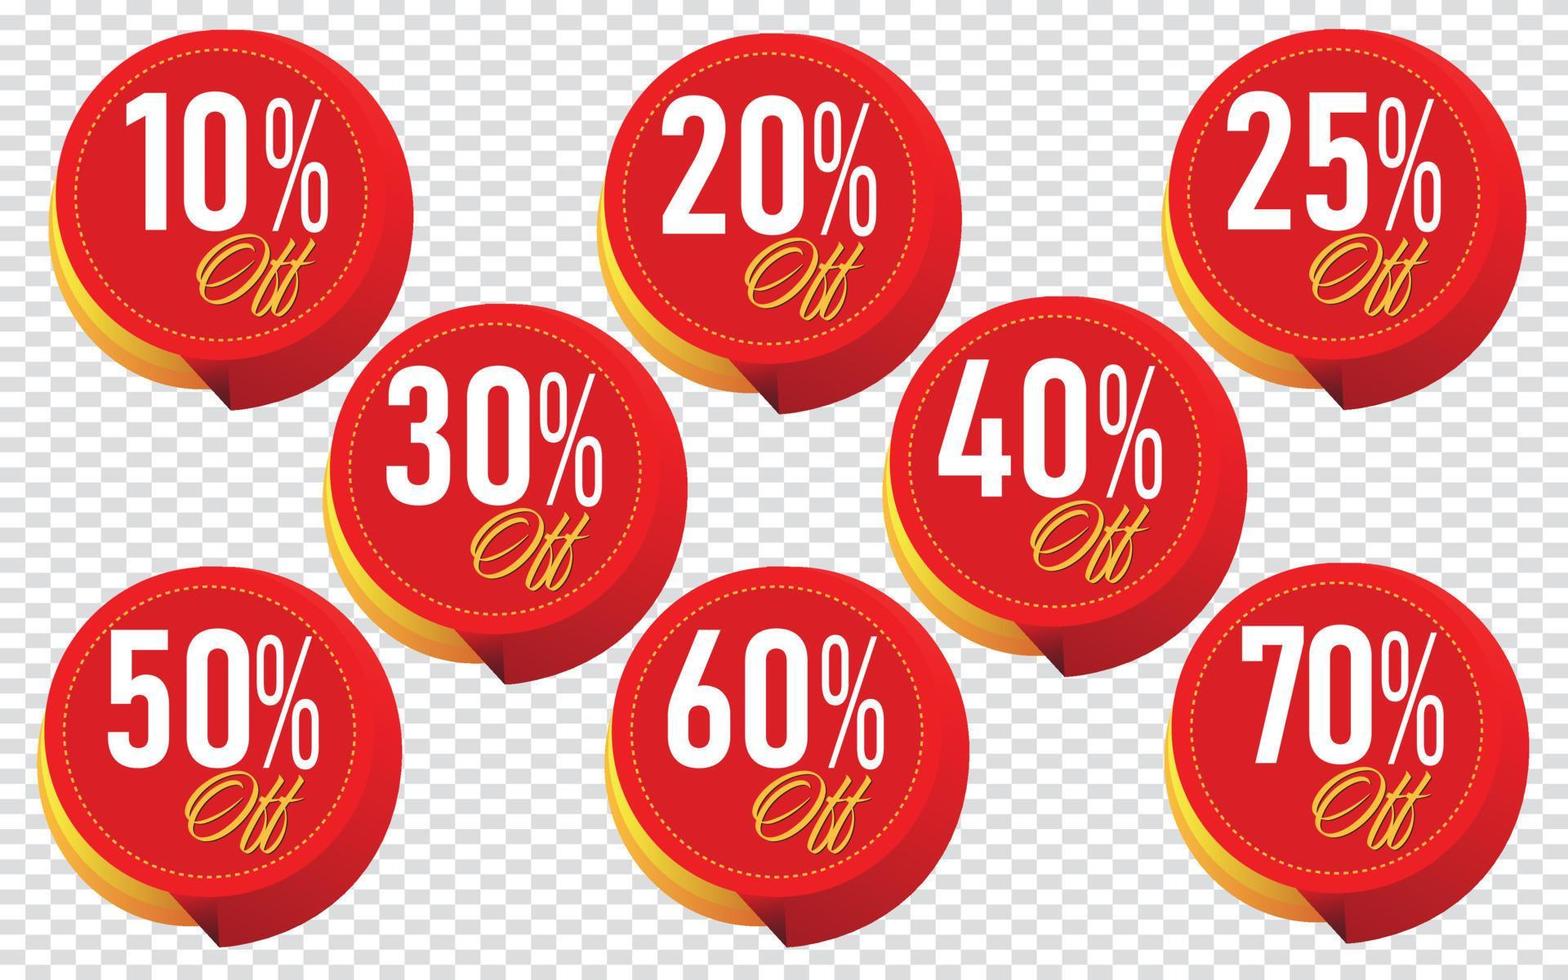 10,20,25,30,40,50,60,70 ilustração em vetor distintivo de marca de desconto percentual. design perfeito para banners de loja e venda